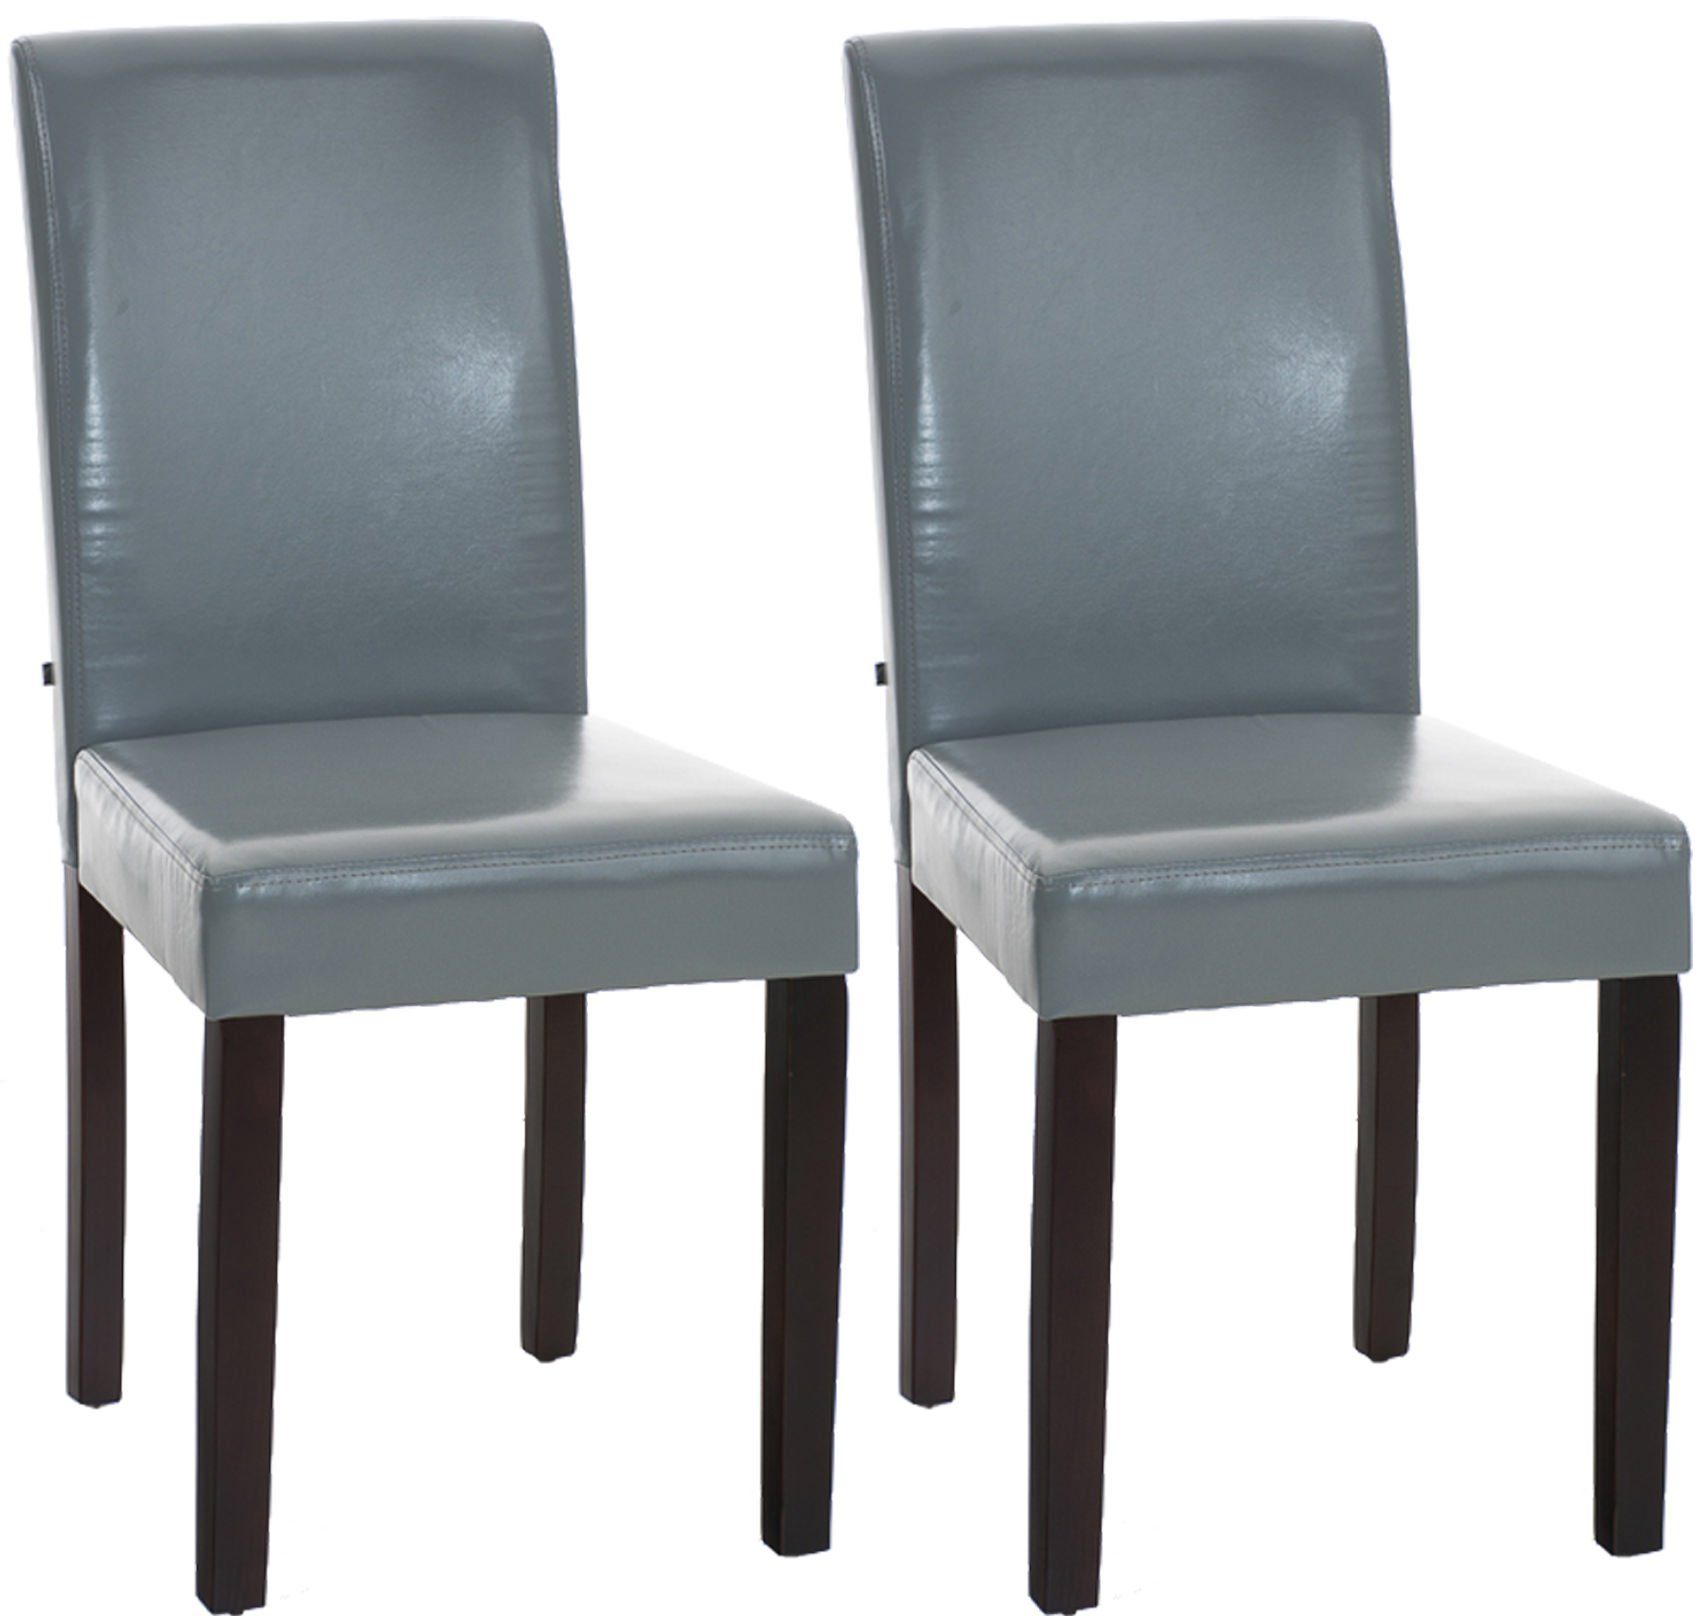 TPFLiving Esszimmerstuhl Ines mit hochwertig gepolsterter Sitzfläche - Konferenzstuhl (Küchenstuhl - Esstischstuhl - Wohnzimmerstuhl, 2 St), Gestell: Holz dunkelbraun - Sitzfläche: Kunstleder grau | Stühle